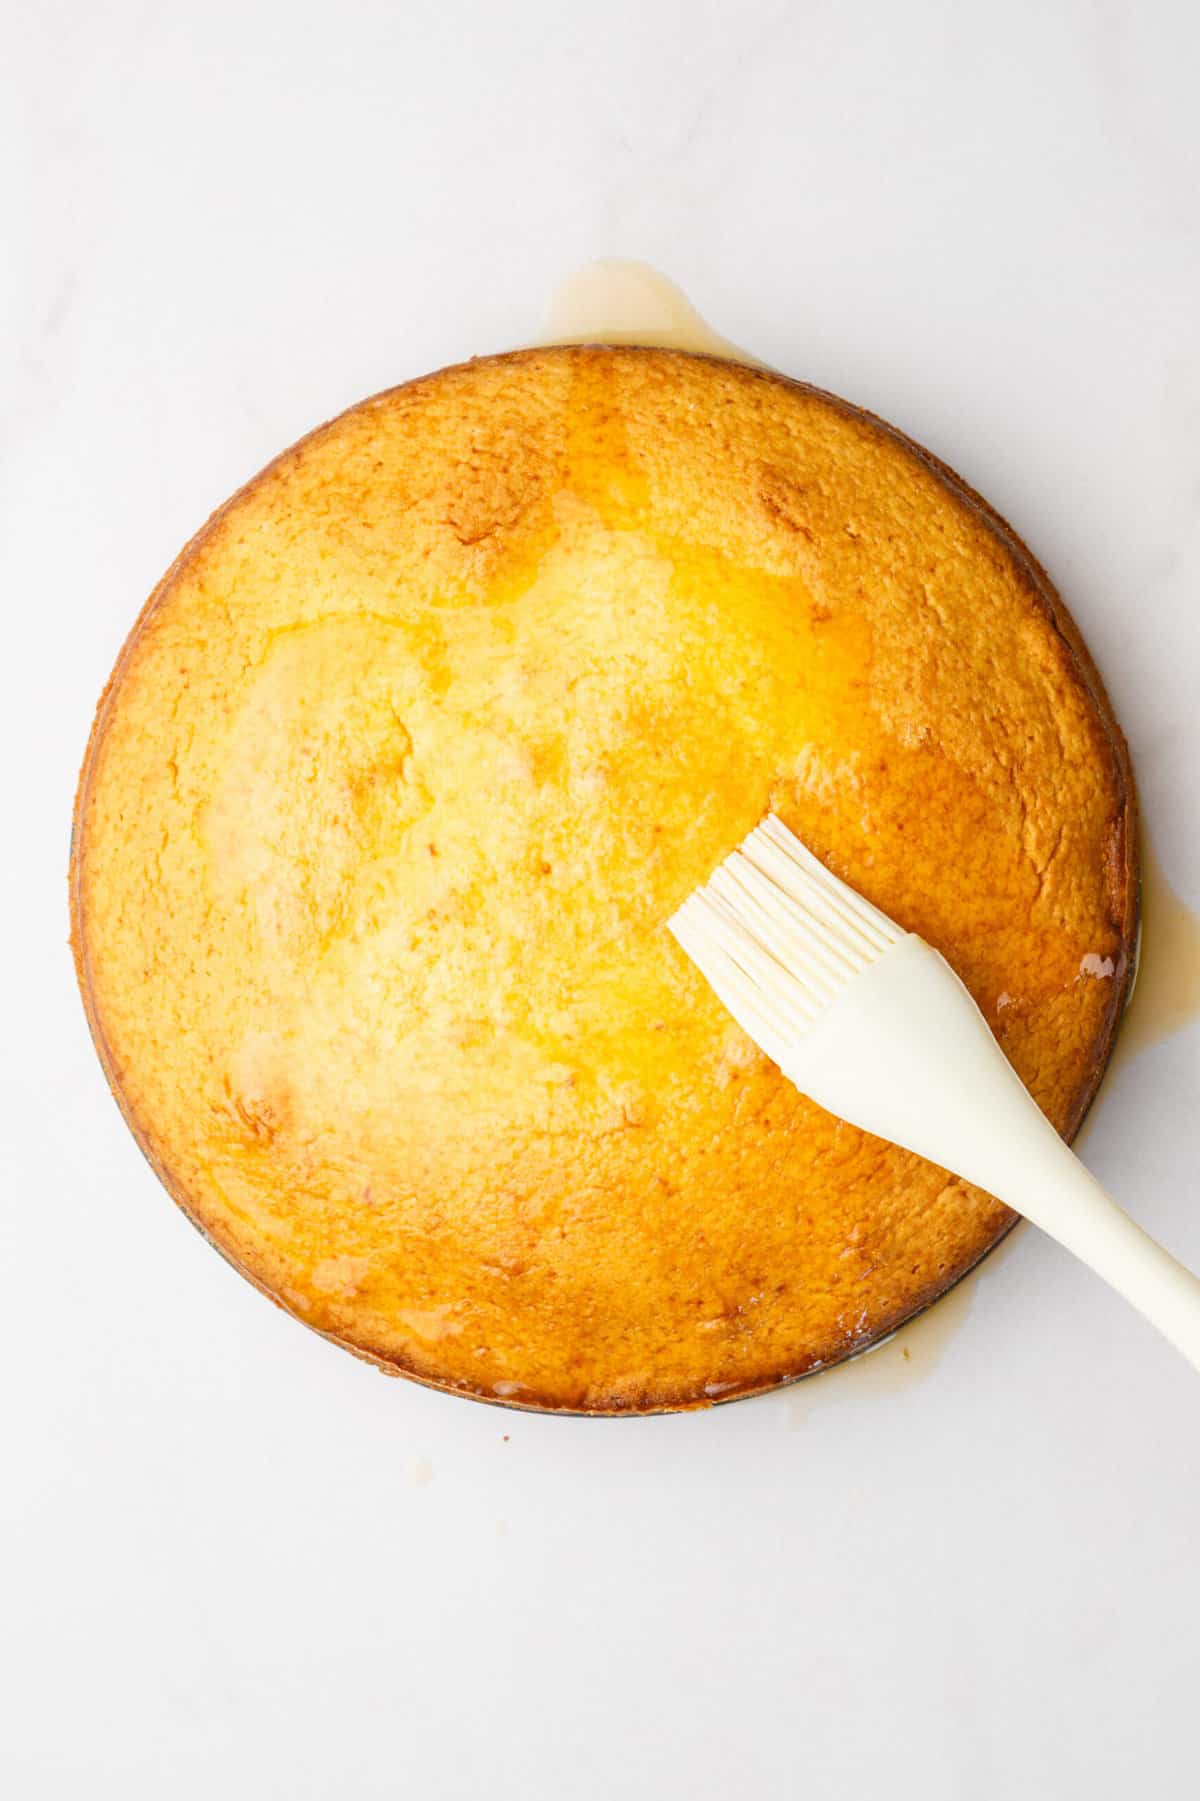 step 6 to make orange cake, use a kitchen brush to drench the orange glaze over the baked orange cake